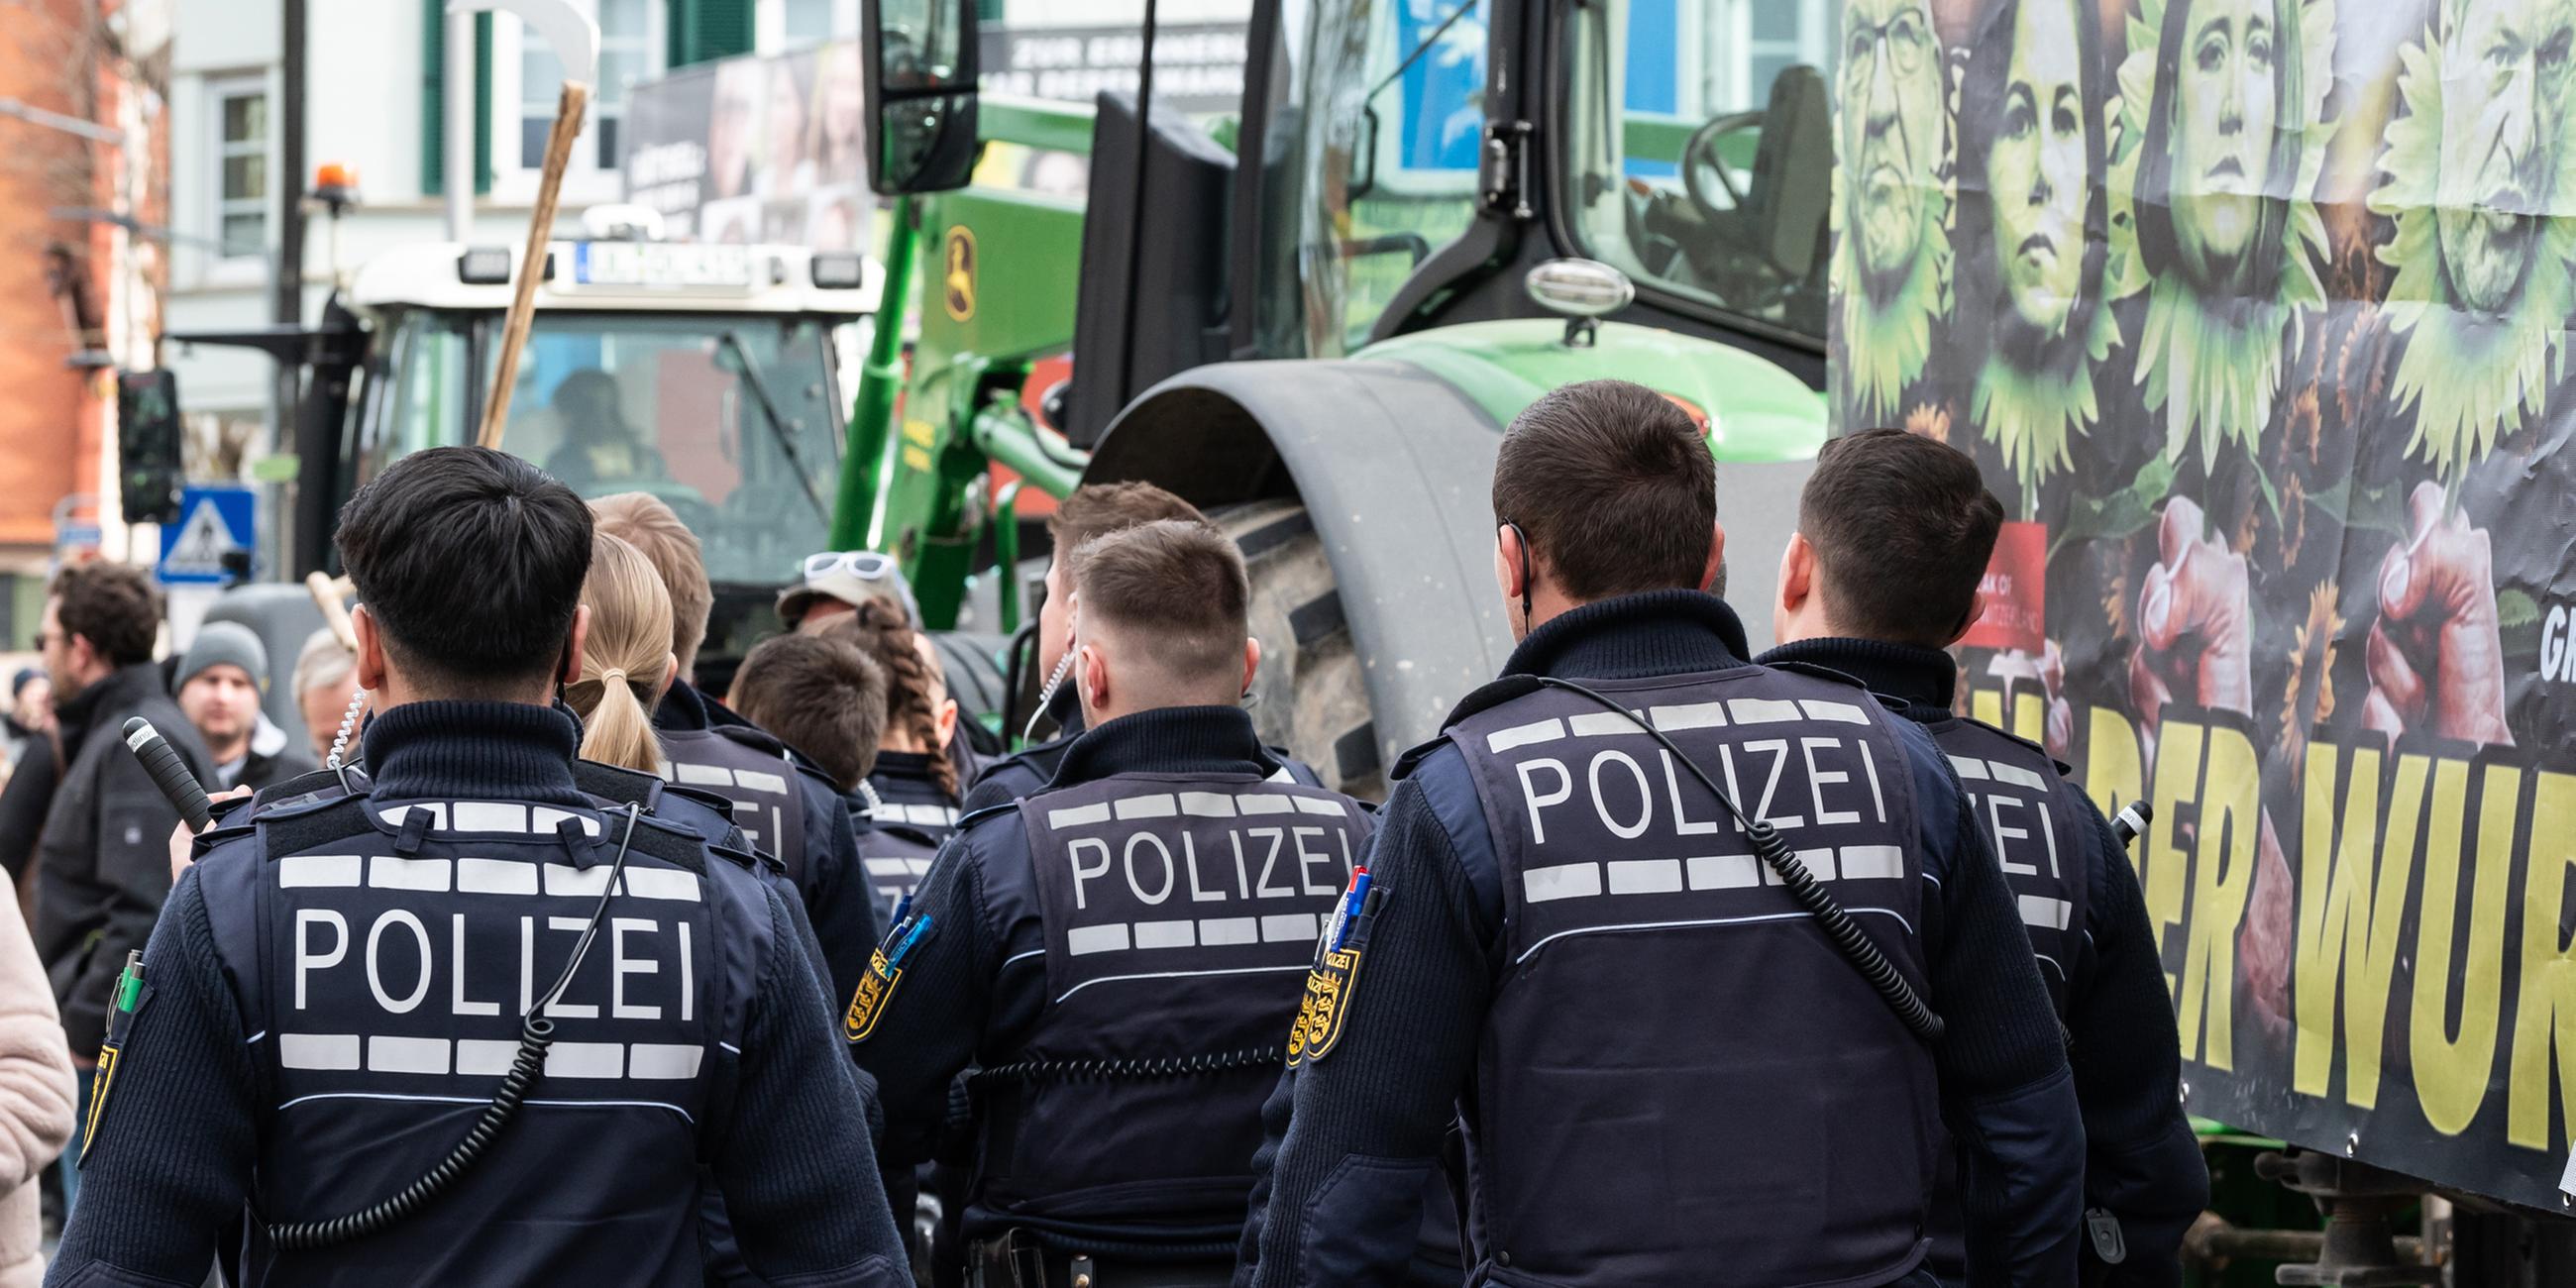  Polizisten gehen während einer Demonstration vor Beginn des politischen Aschermittwochs der baden-württembergischen Grünen vor der Stadthalle in Biberach.